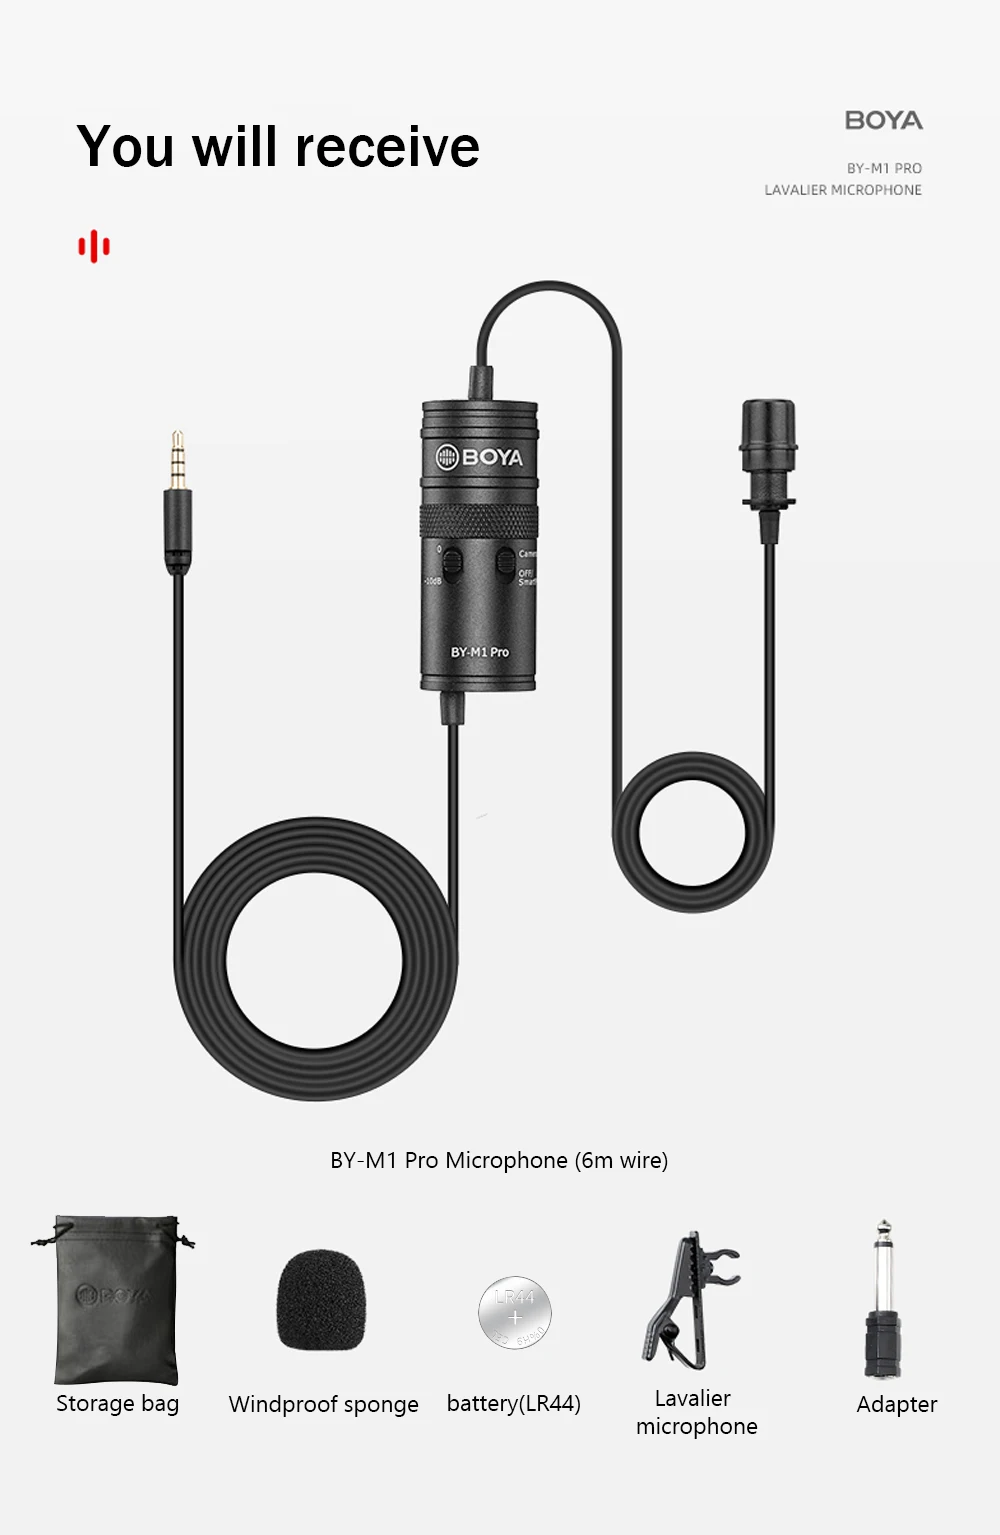 BOYA BY-M1 Pro Universal Lavalier Microphone 4